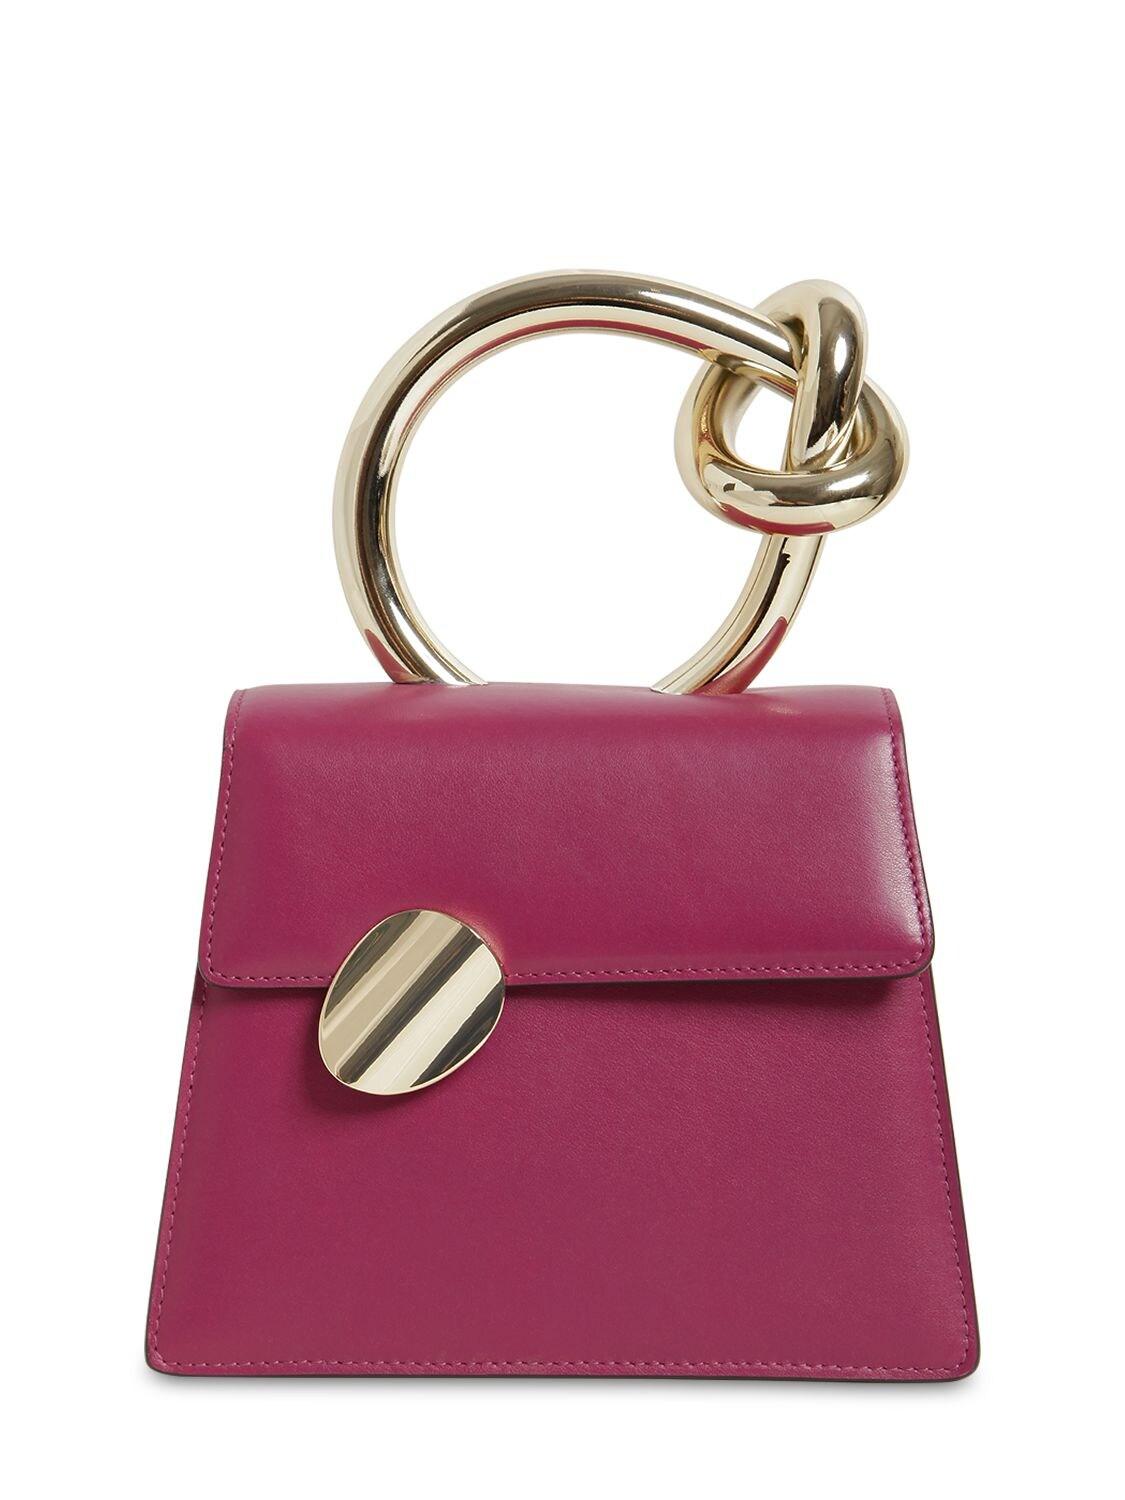 Benedetta Bruzziches Brigitta Small Leather Top Handle Bag in Purple - Lyst